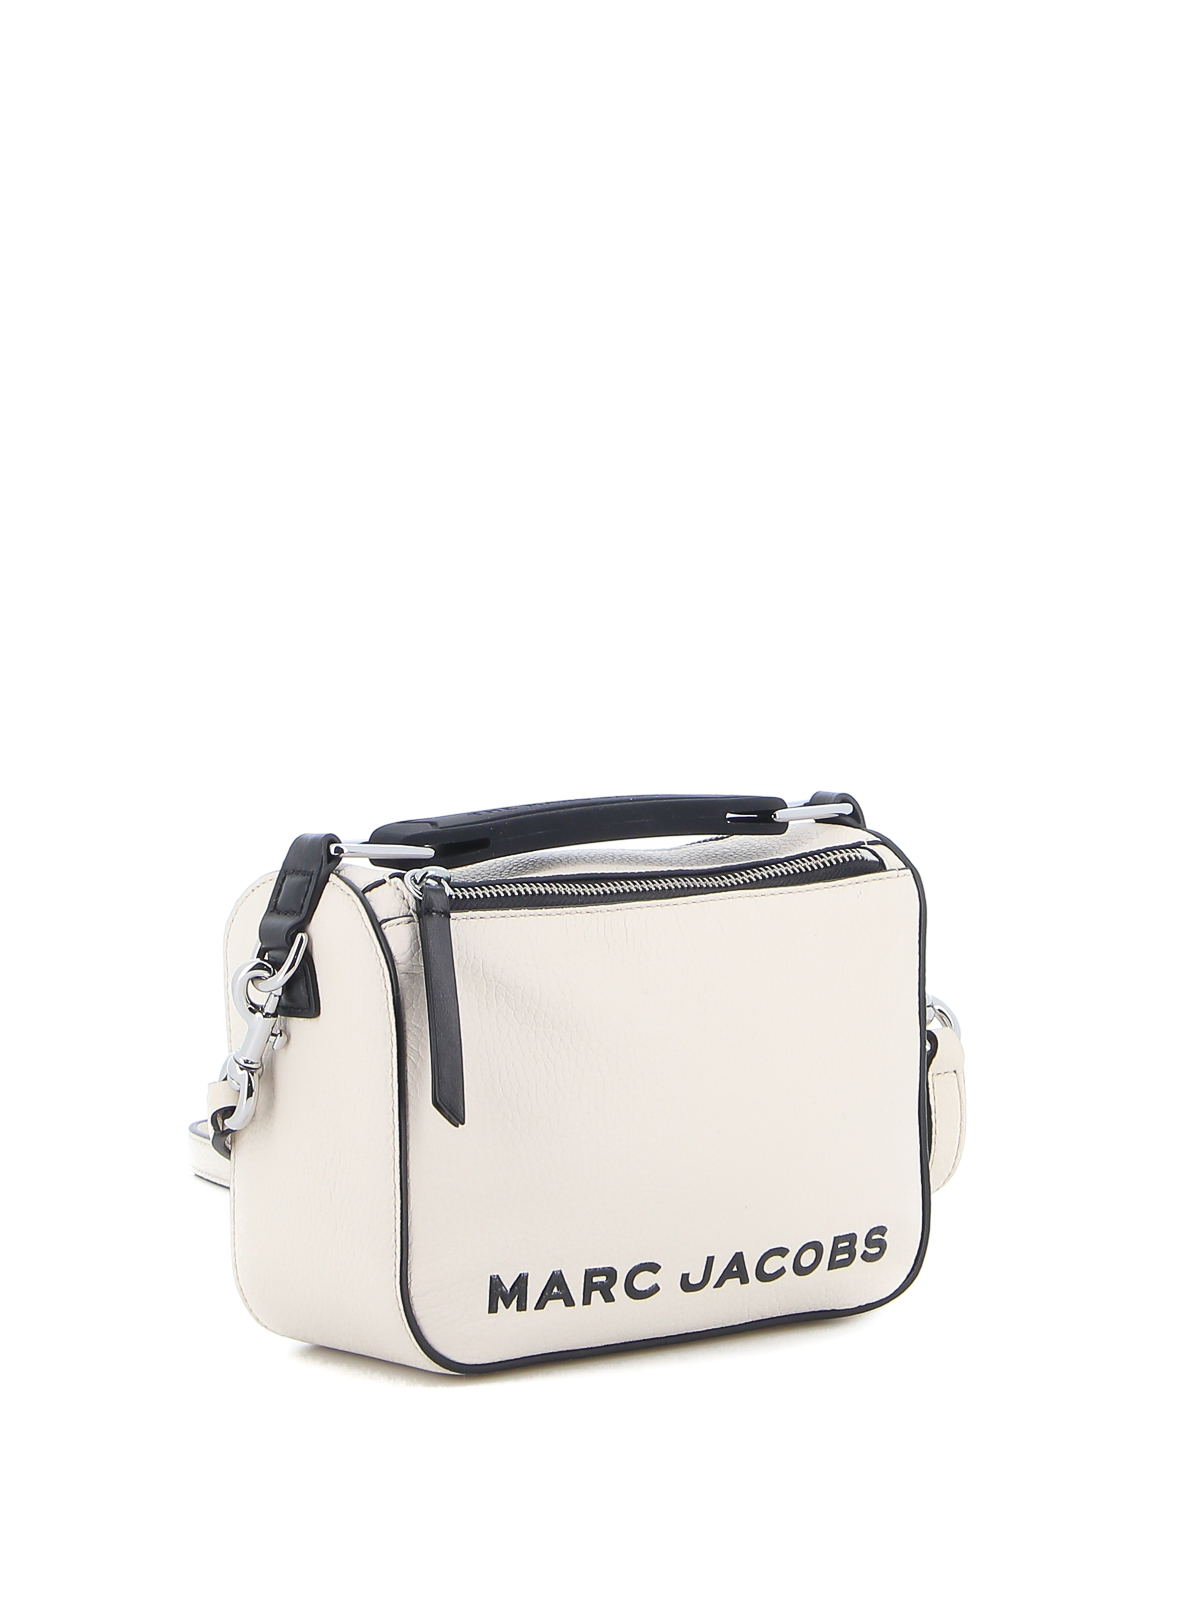 クロスボディバッグ Marc Jacobs - クロスボディバッグ - The Soft Box ...